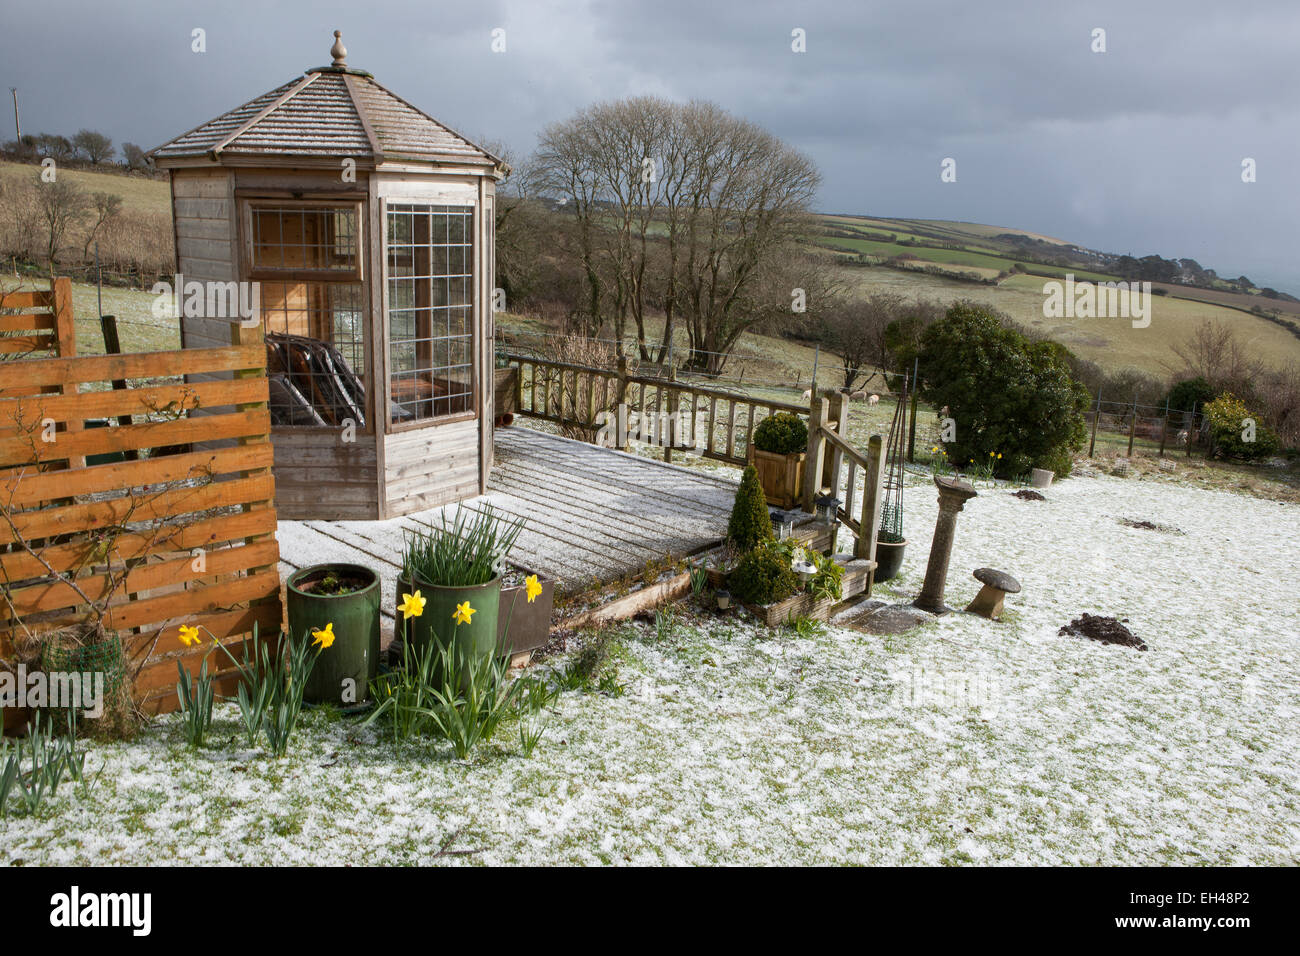 Ungewöhnliche Wetter für März in Cornwall, deckt ein Rückgang von Schnee, der Rasen und der Belag rund um das Gartenhaus. Stockfoto